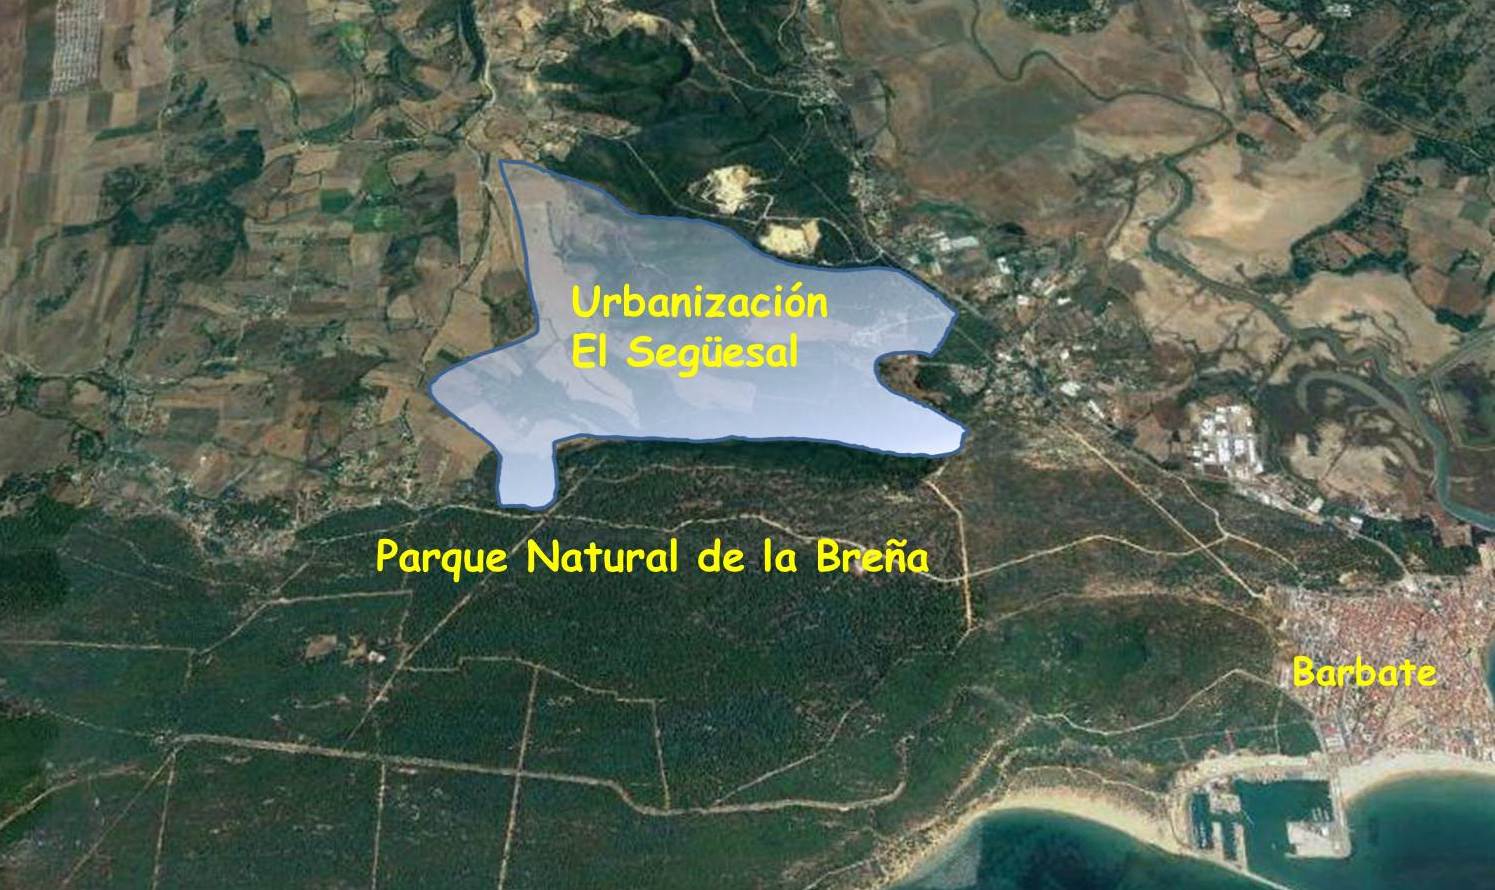 Plano de la ubicación del macroproyecto previsto en El Següesal, en Barbate.